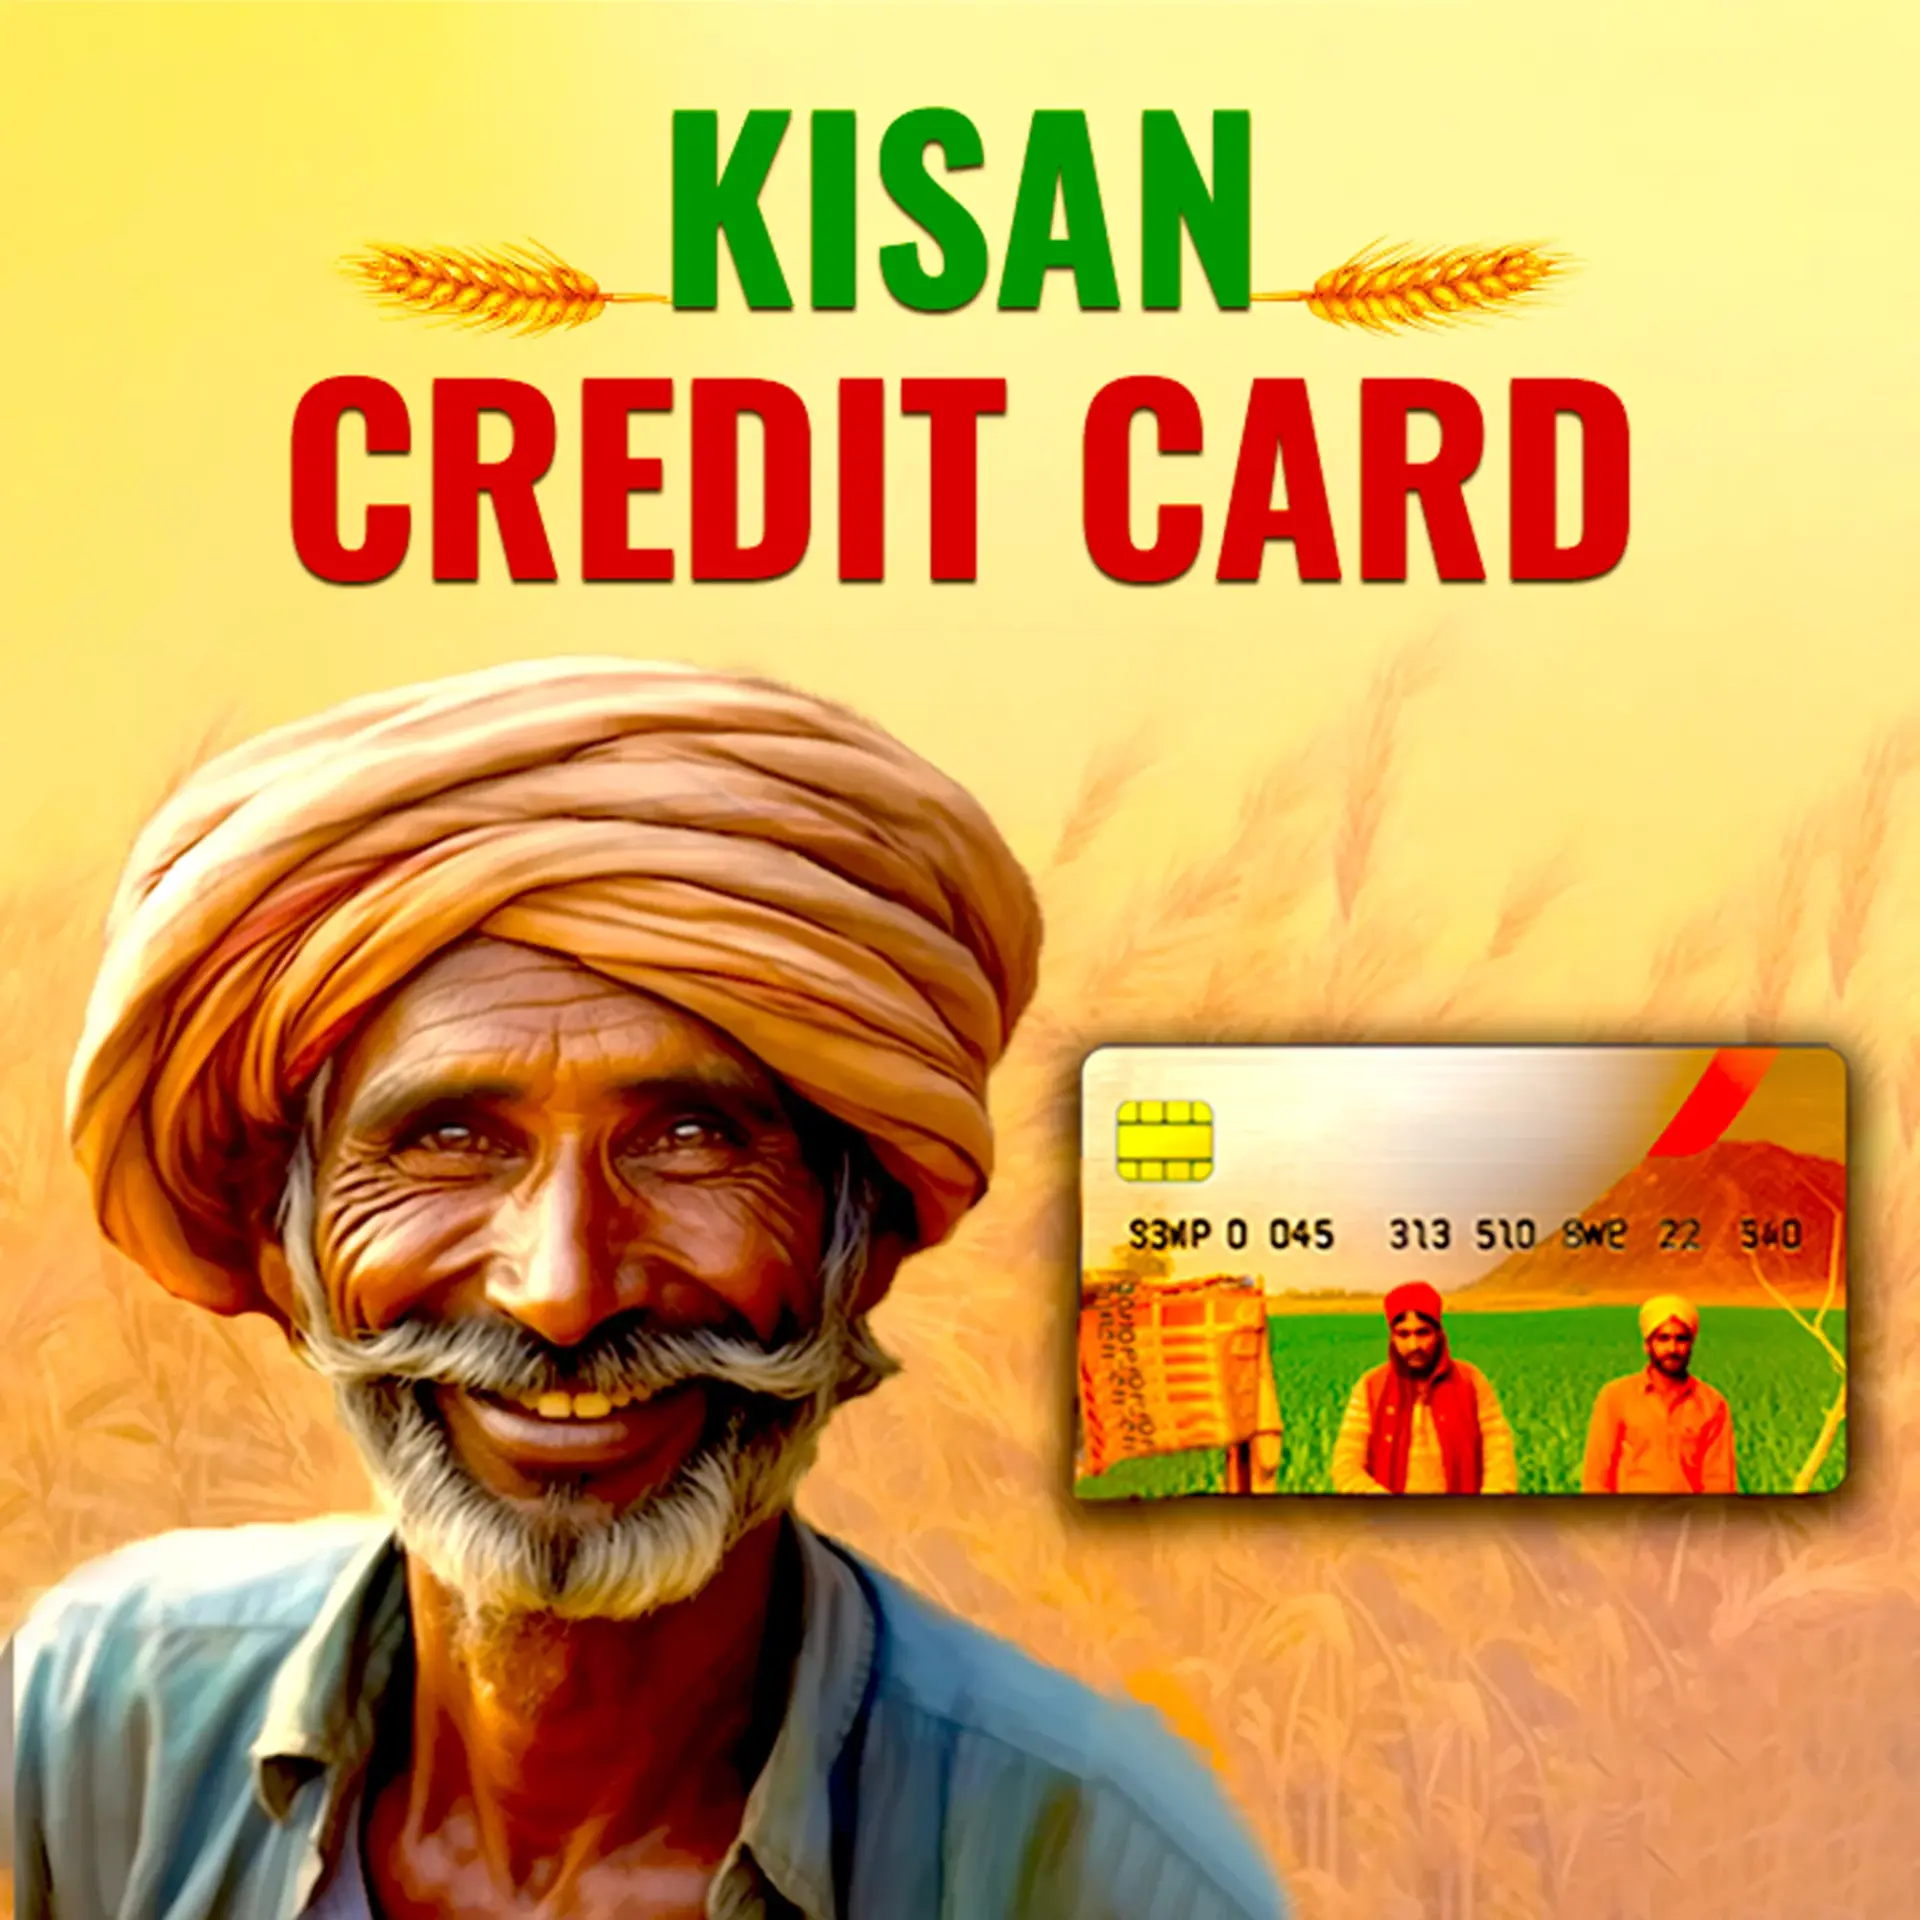 1. Kisan Credit Card Kaise Apply Karein ? | 